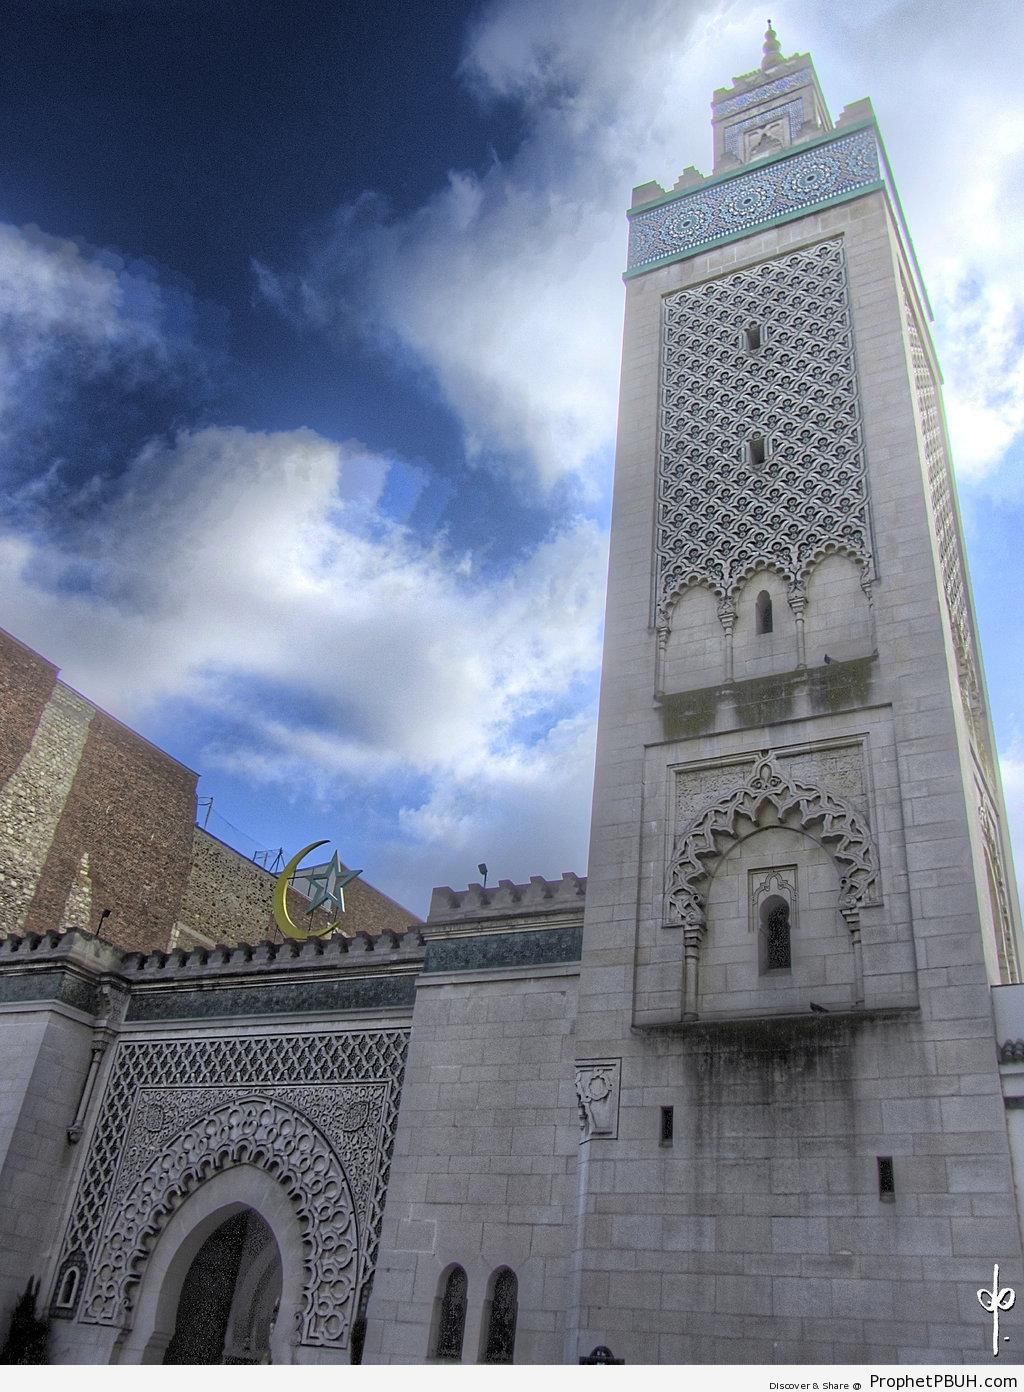 The Grande MosquÃ©e de Paris (Great Mosque of Paris) in Paris, France - France -Picture